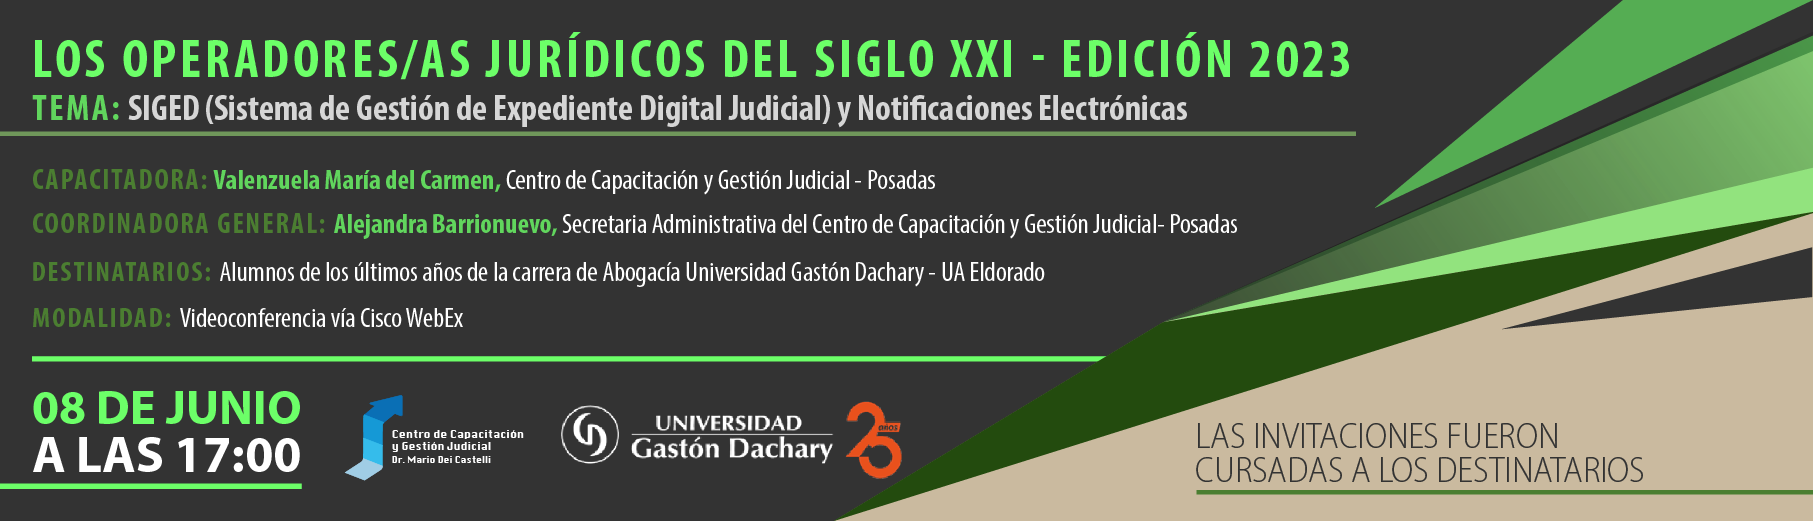 P4_Los_Operadores_Juridicos_del_Siglo_XXI_2023